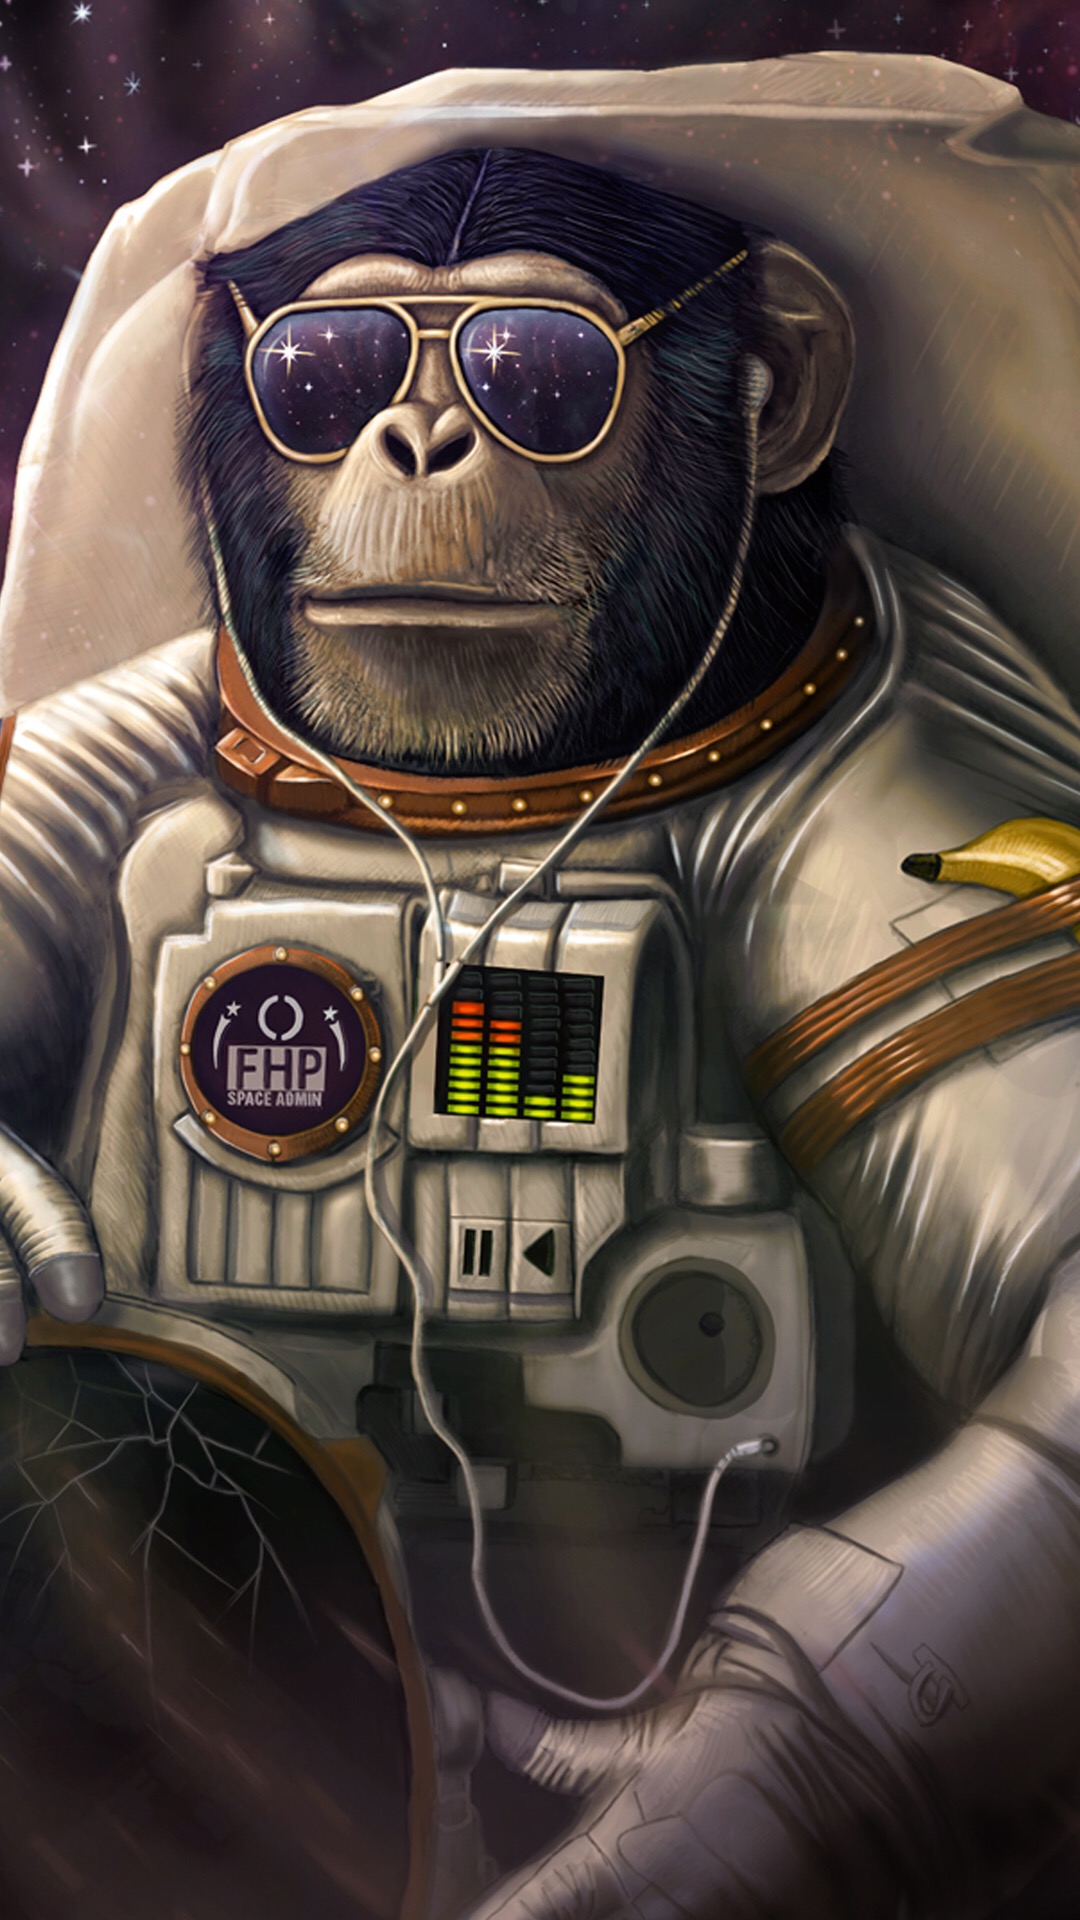 Space monkey. Обезьяна в скафандре. Космическая обезьяна. Обезьянка космонавт. Обезьяна в скафандре арт.